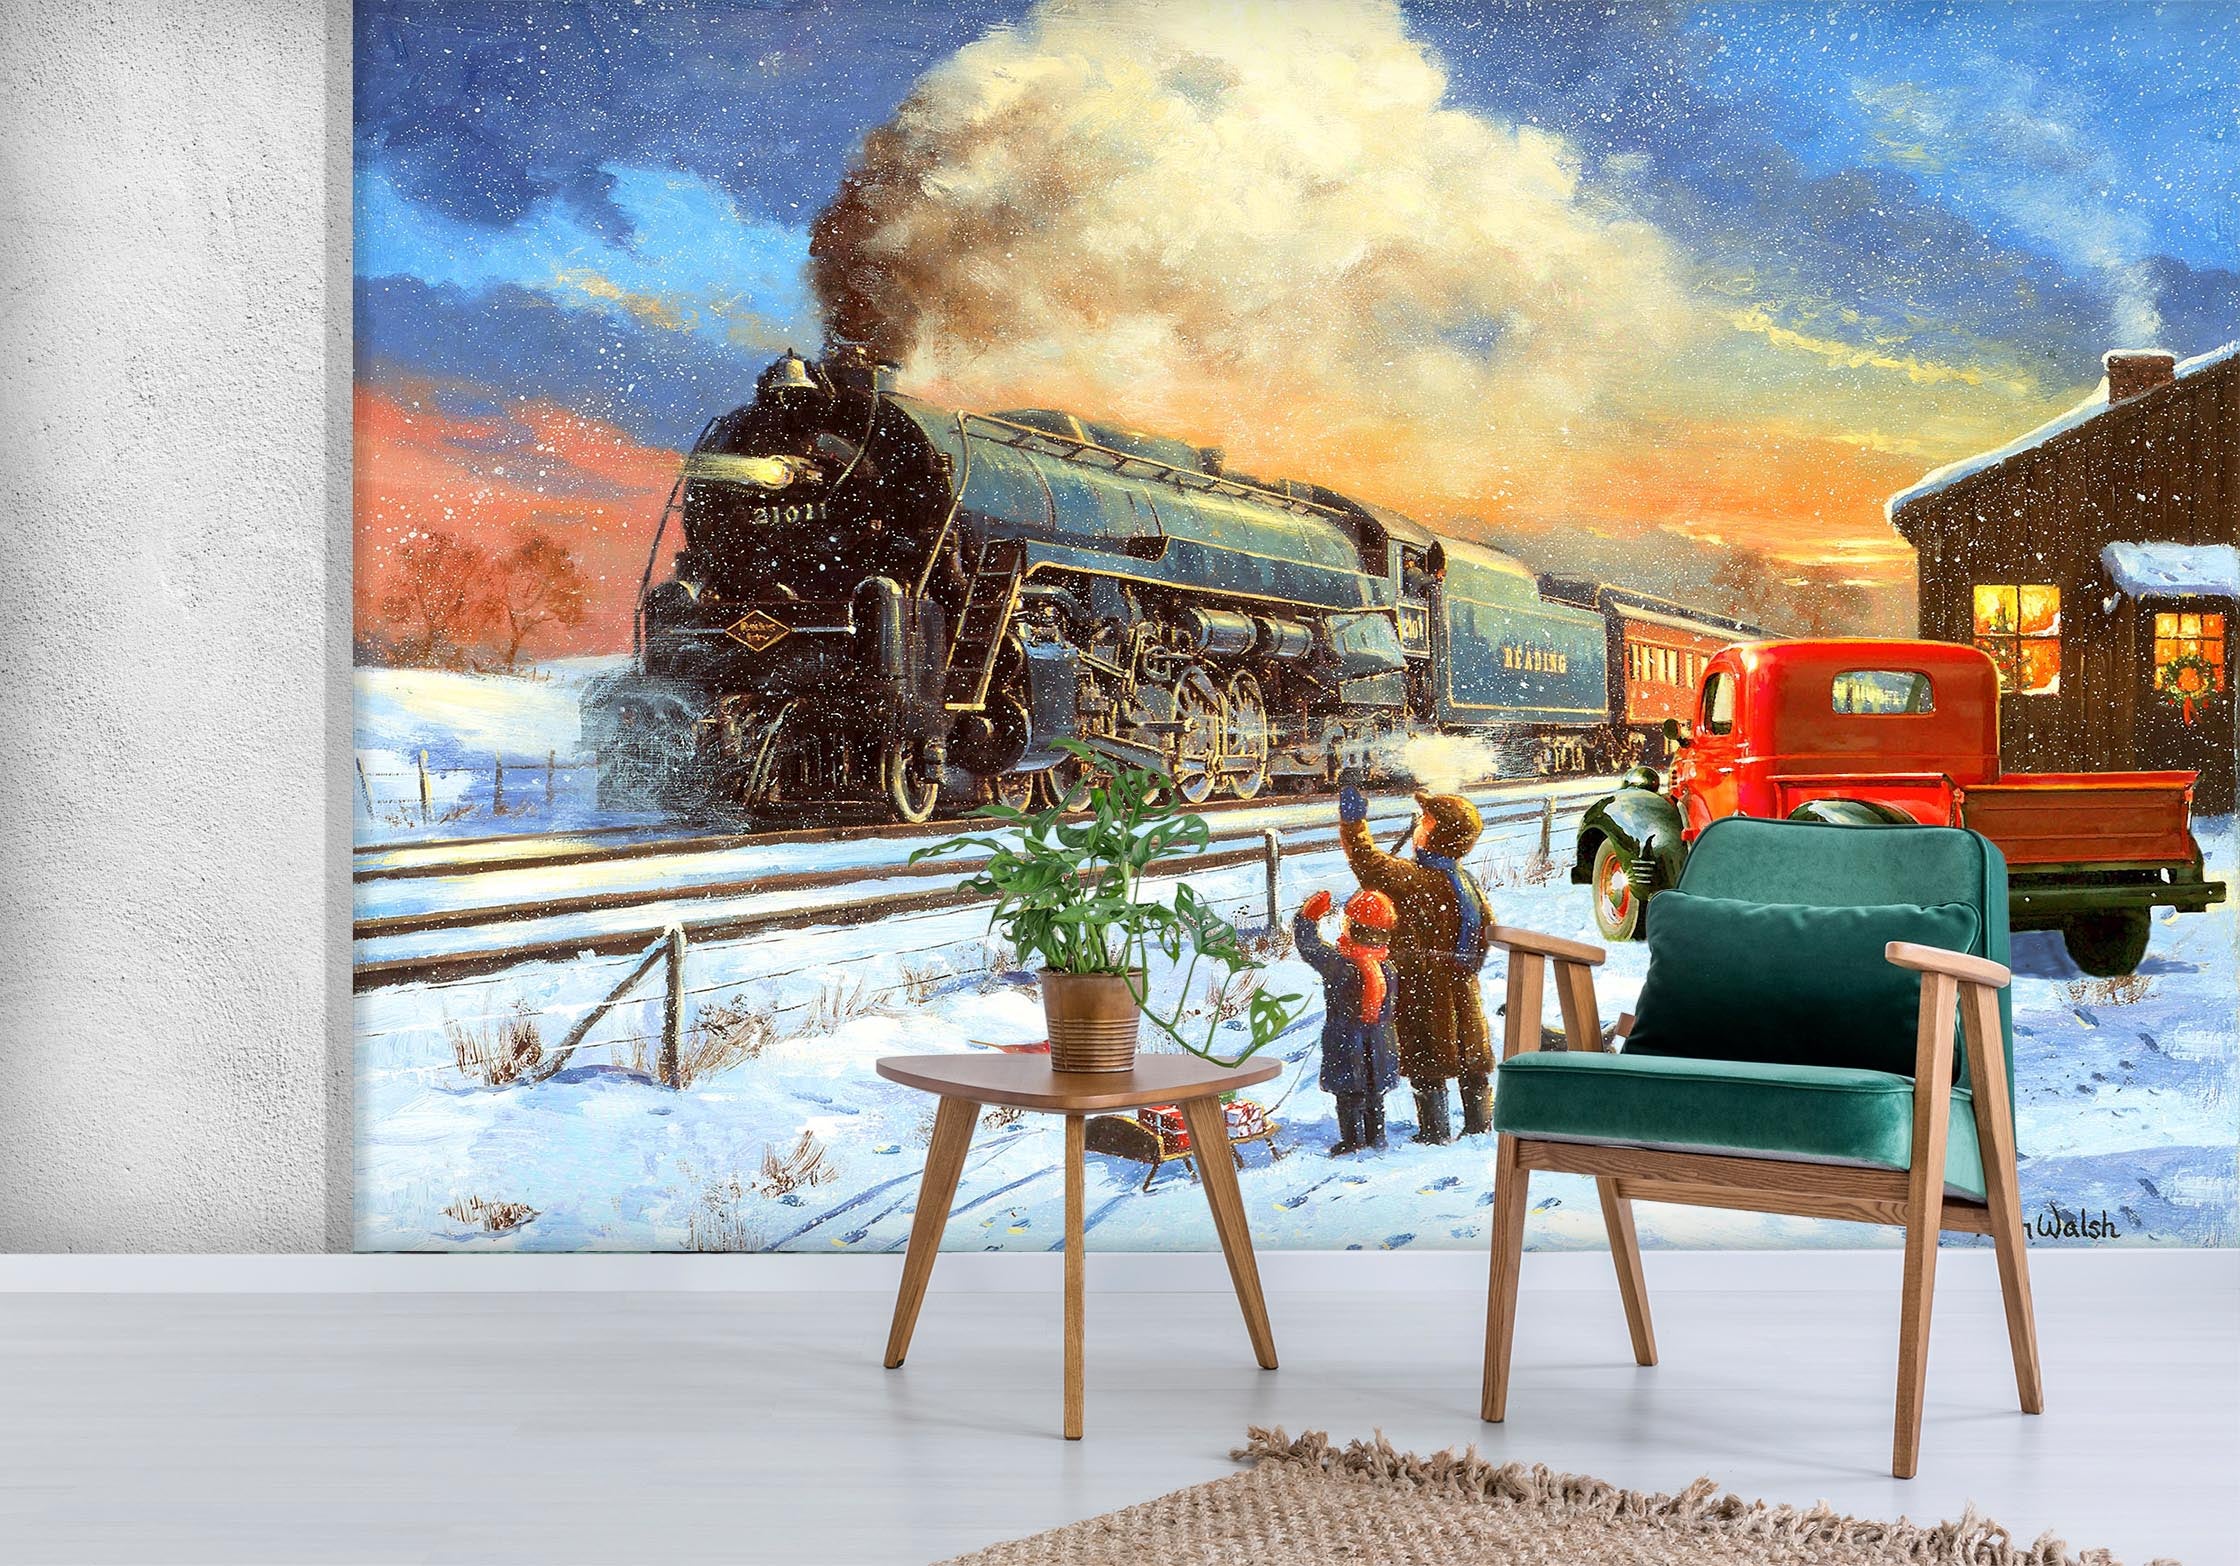 3D Snow Train Car 117 Kevin Walsh Wall Mural Wall Murals